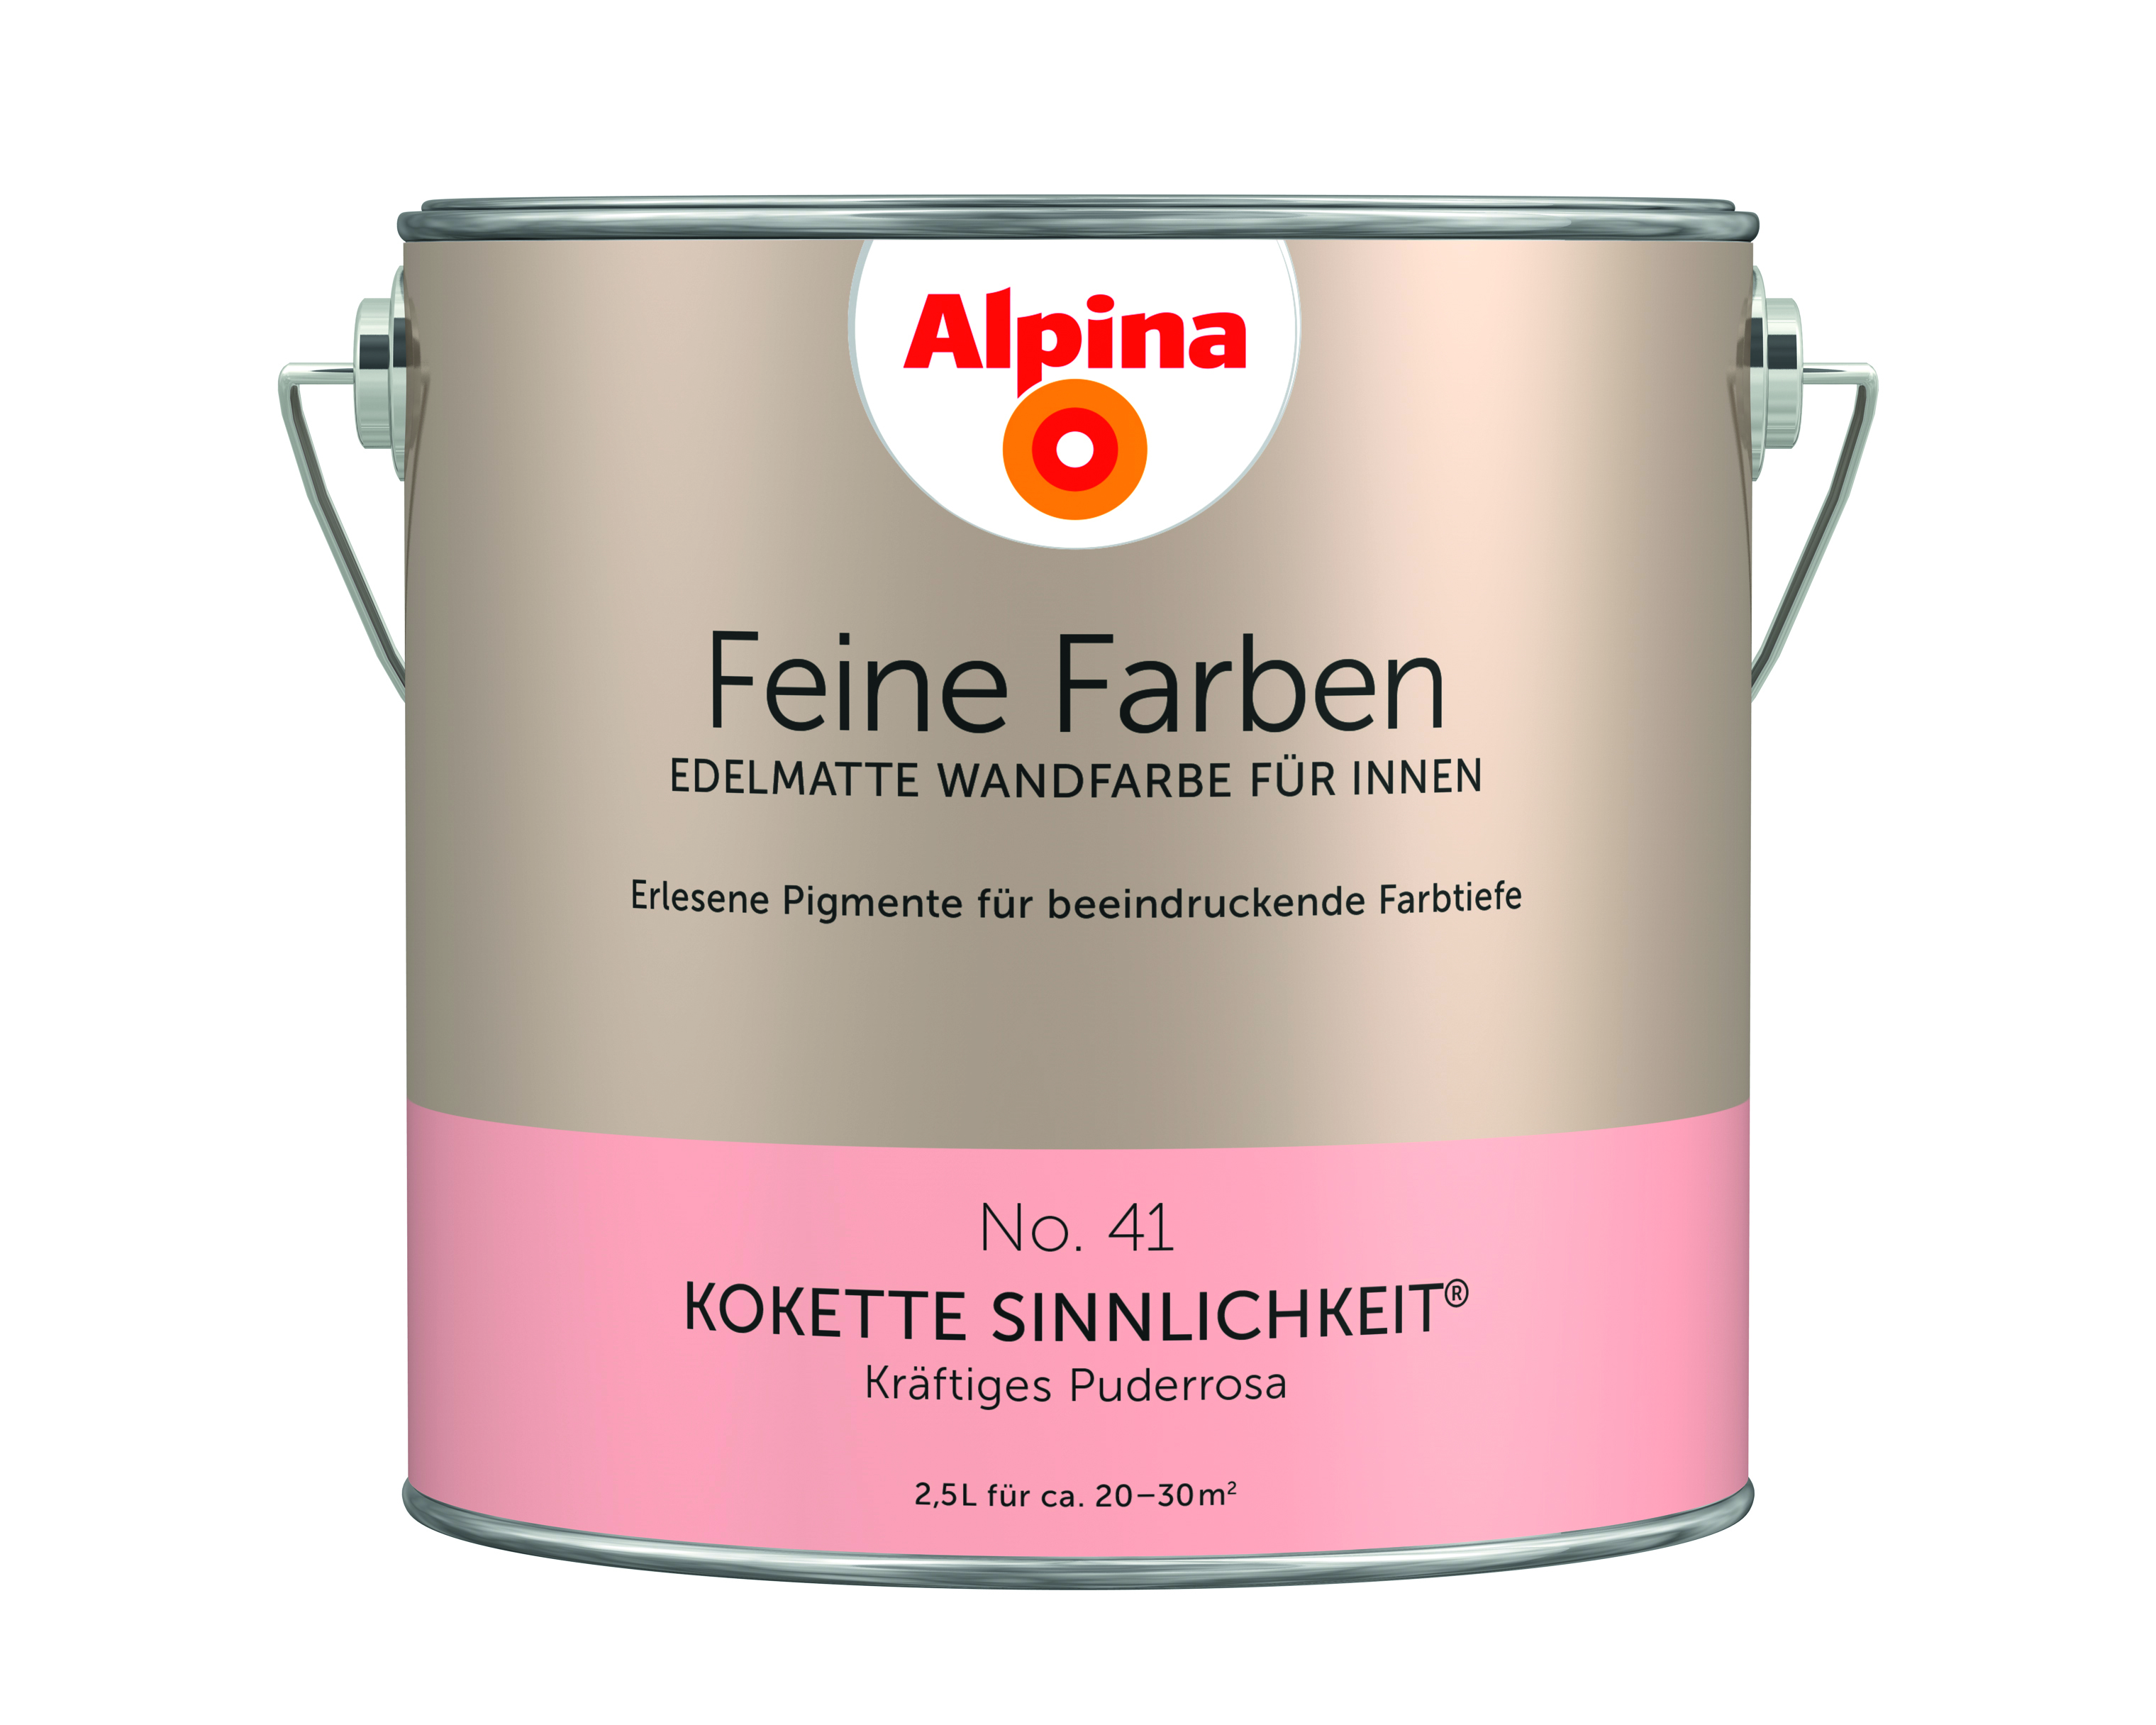 Alpina Feine Farben No. 41, Kokette Sinnlichkeit